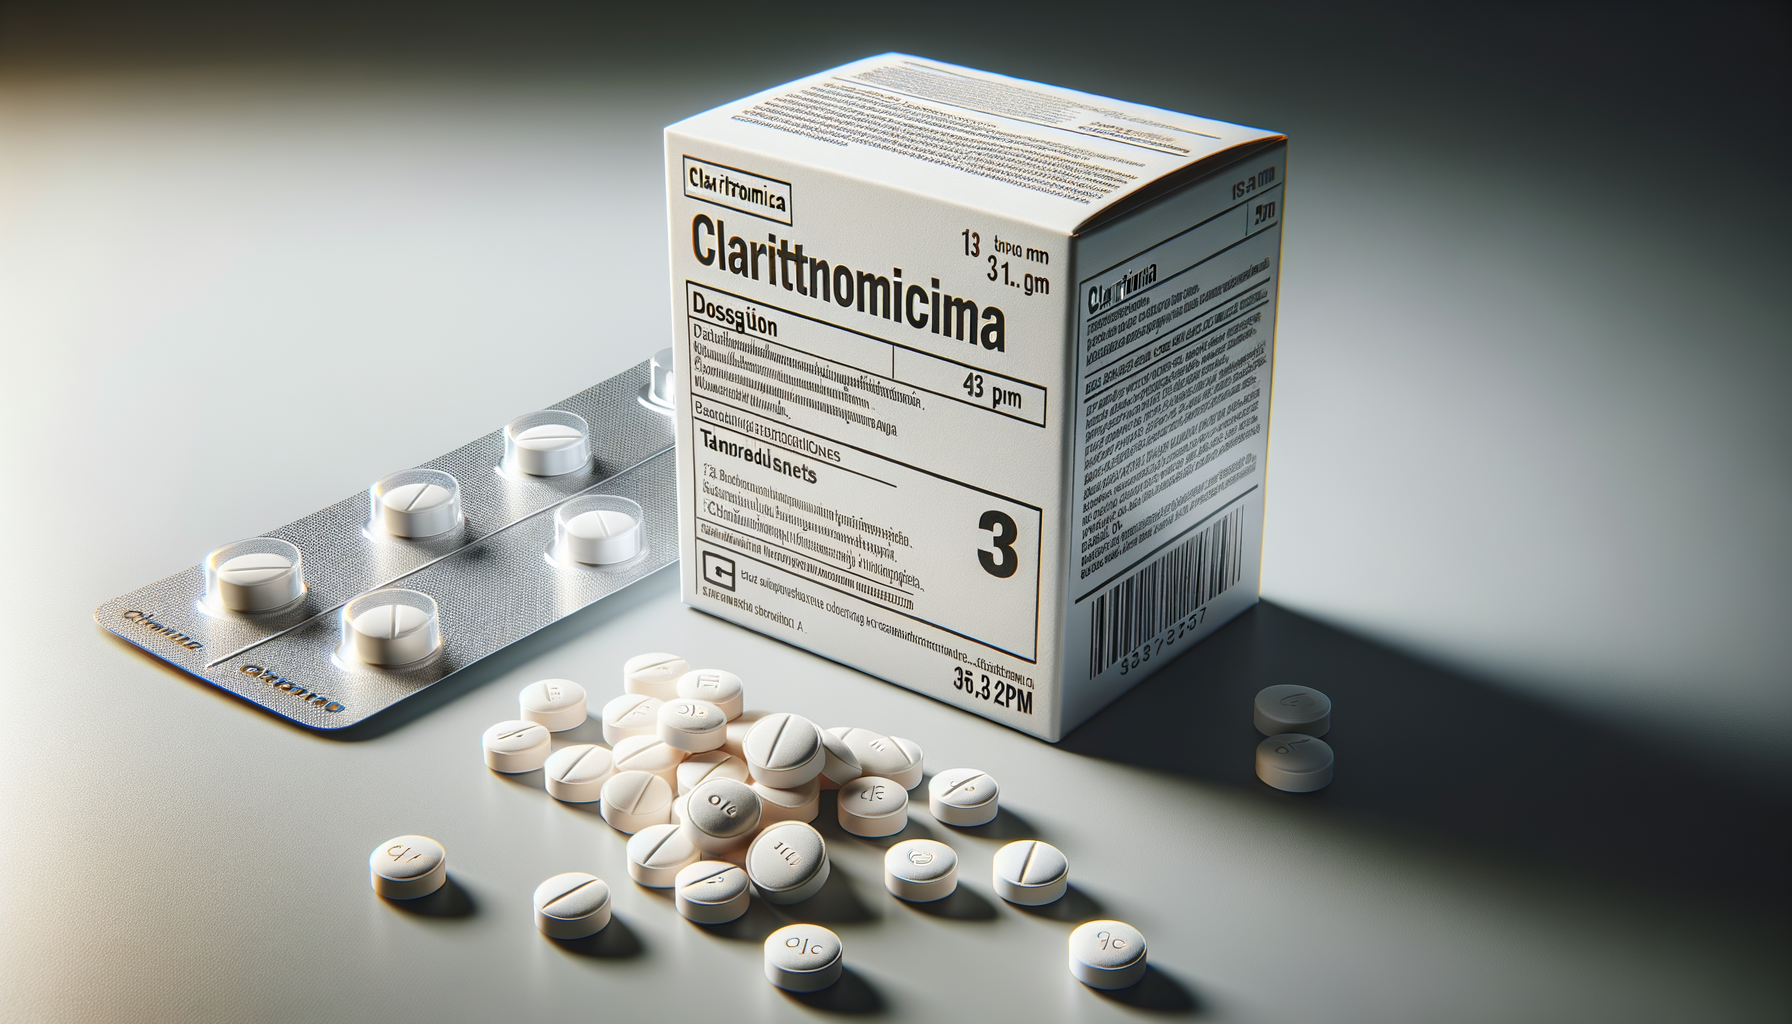 Che differenza c’è tra azitromicina e claritromicina?